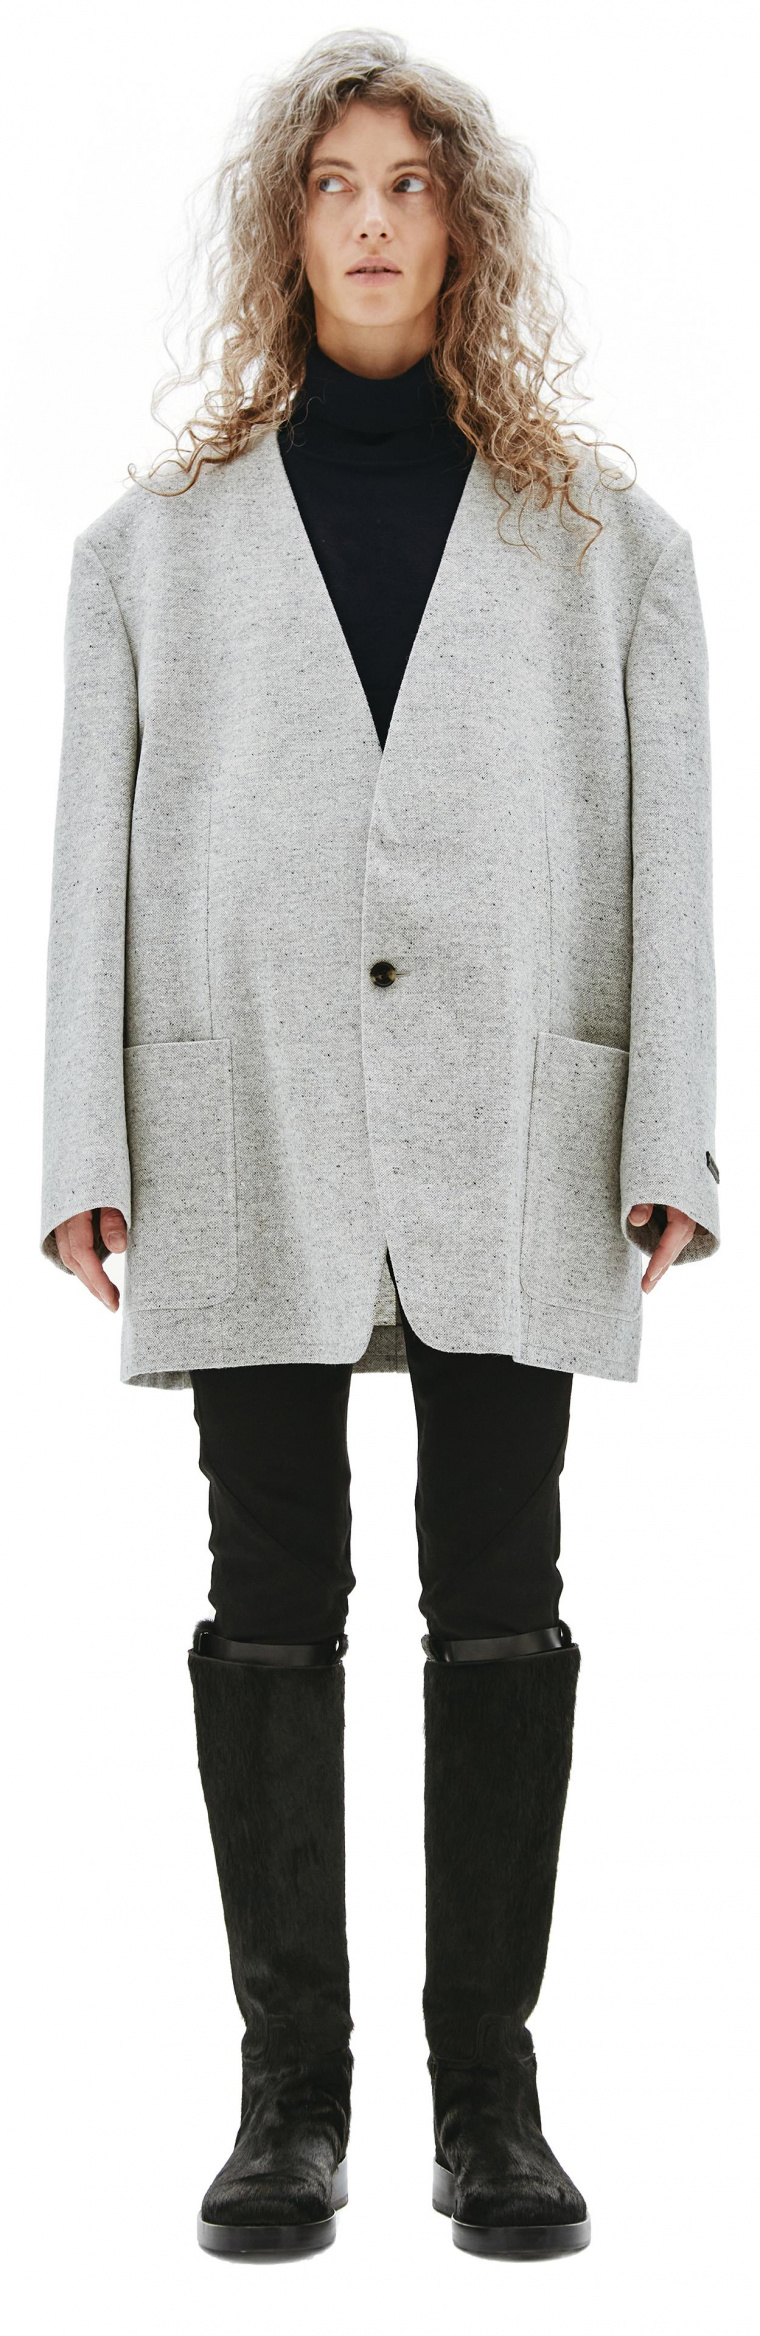 Fear of God Grey Wool Jacket